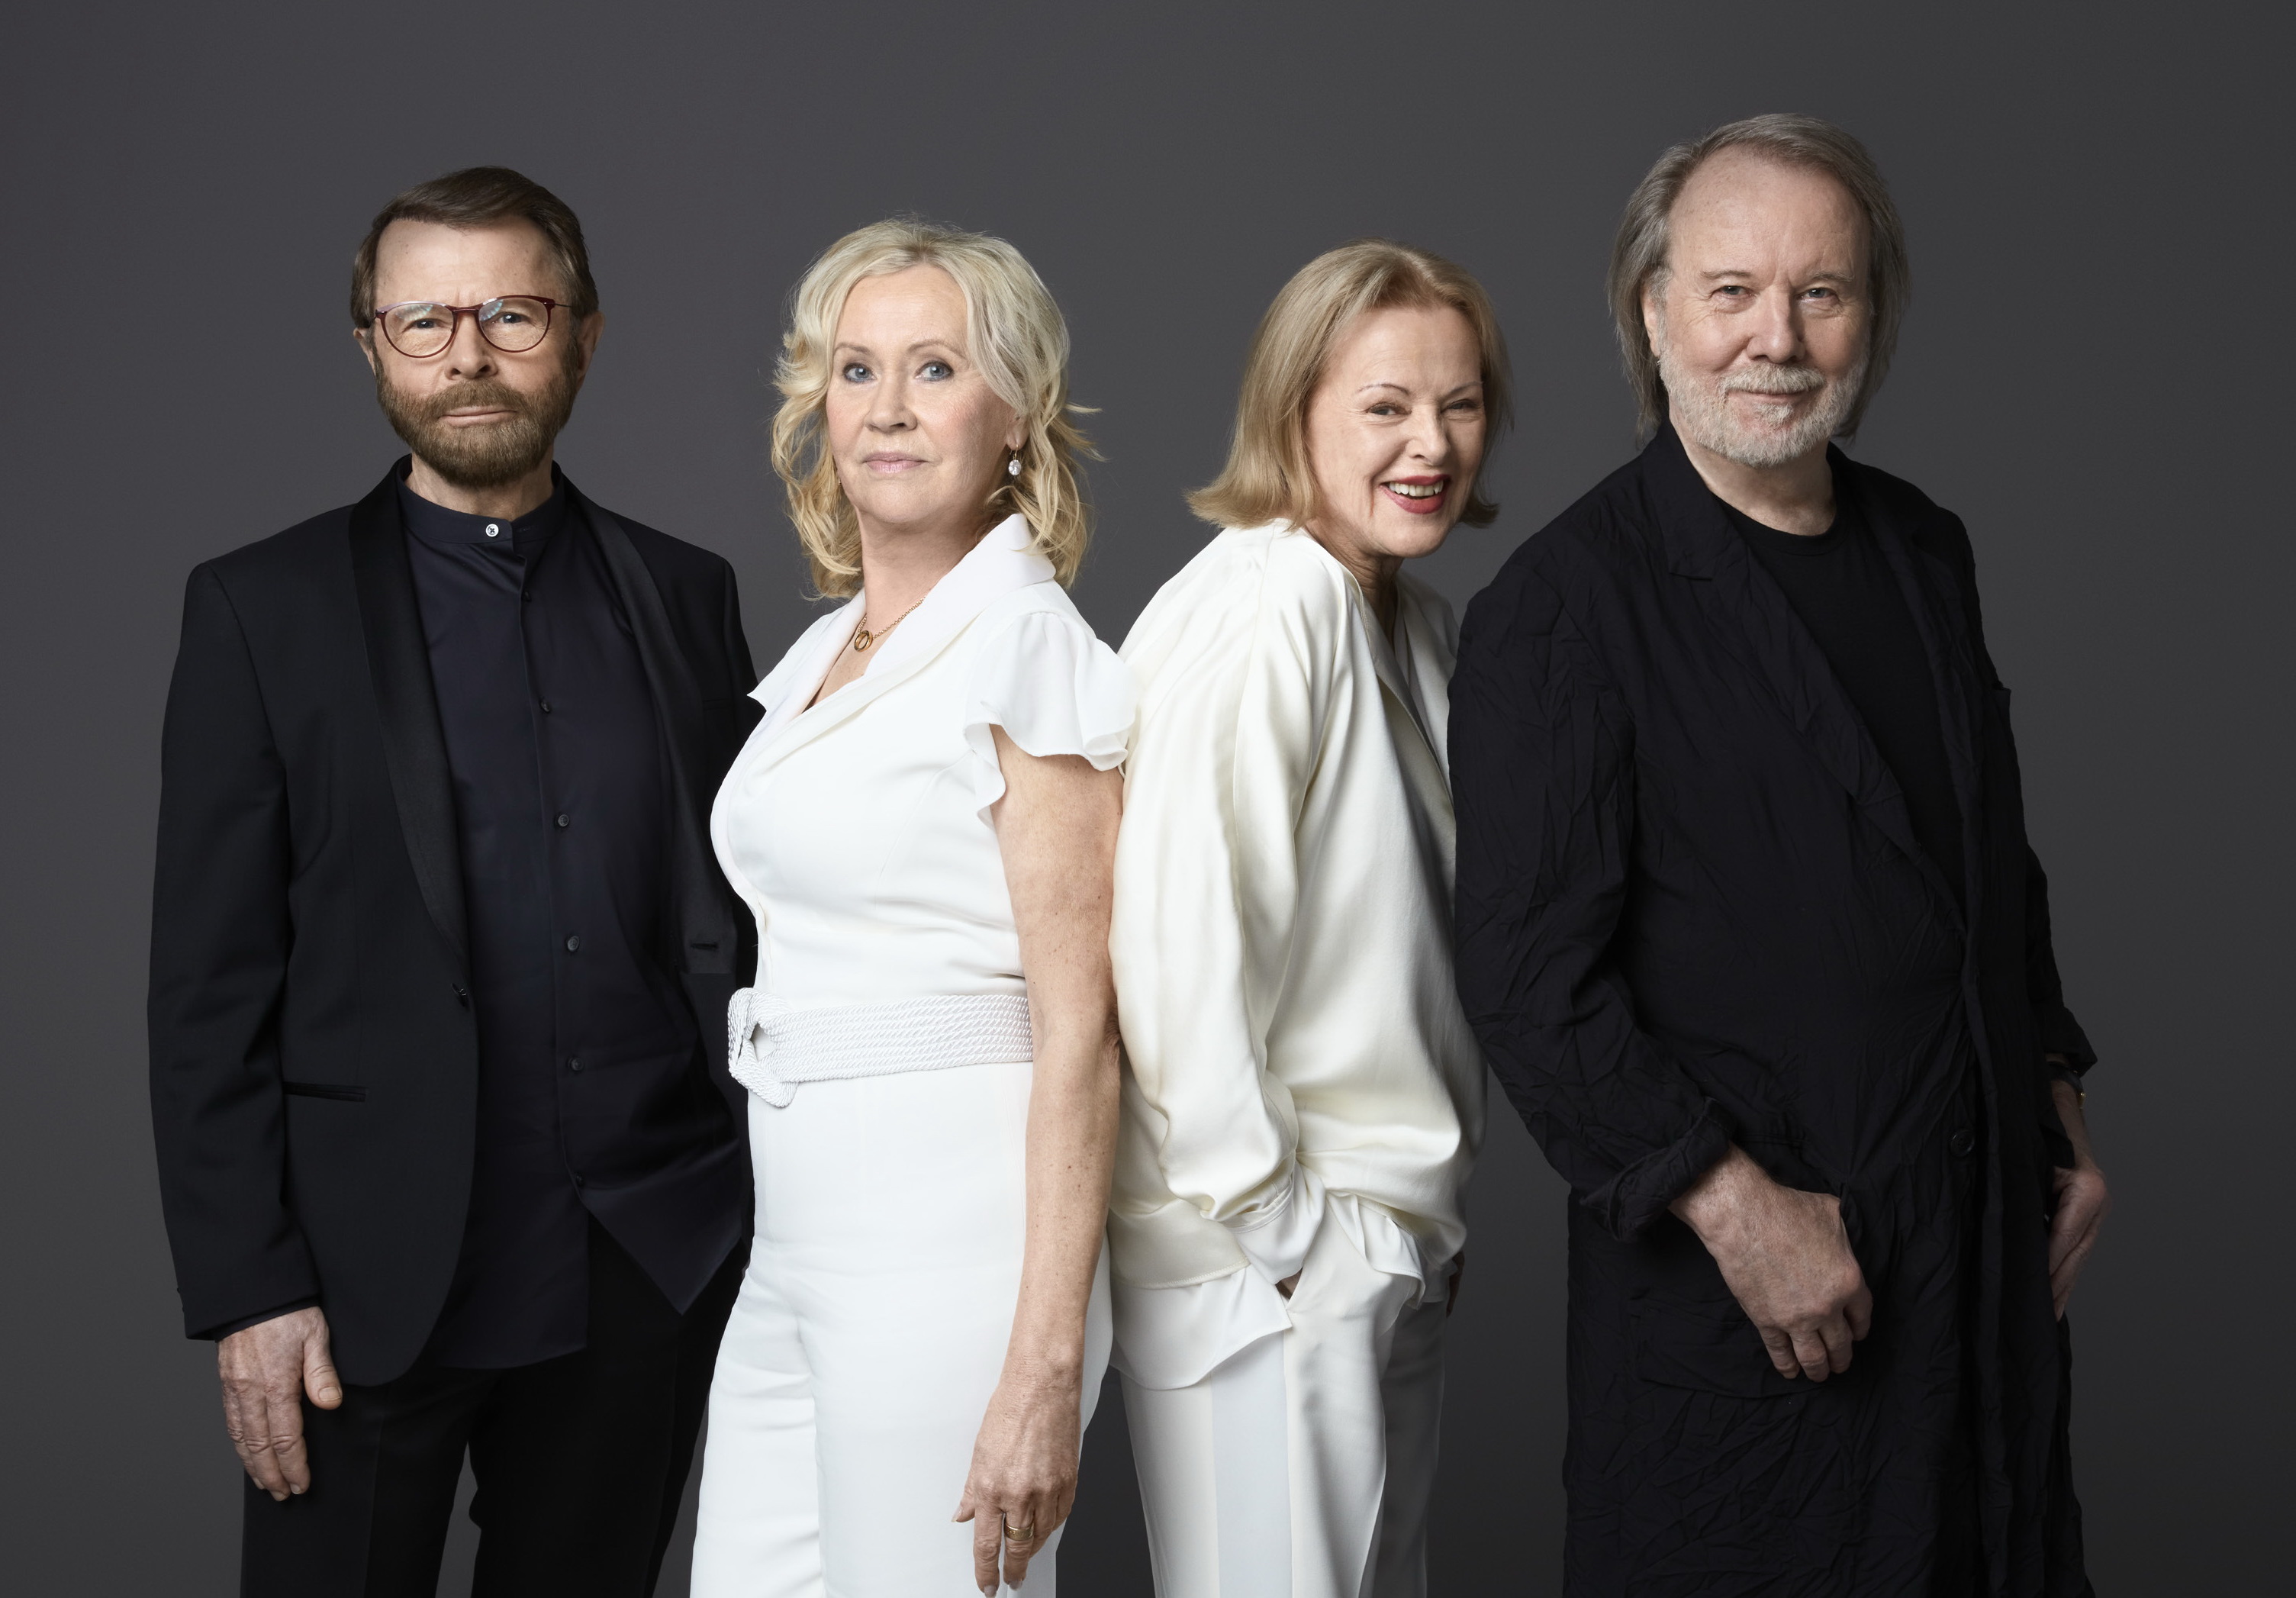 Fanii ABBA au stat la cozi pentru a cumpăra primul album al grupului suedez din ultimii 40 de ani